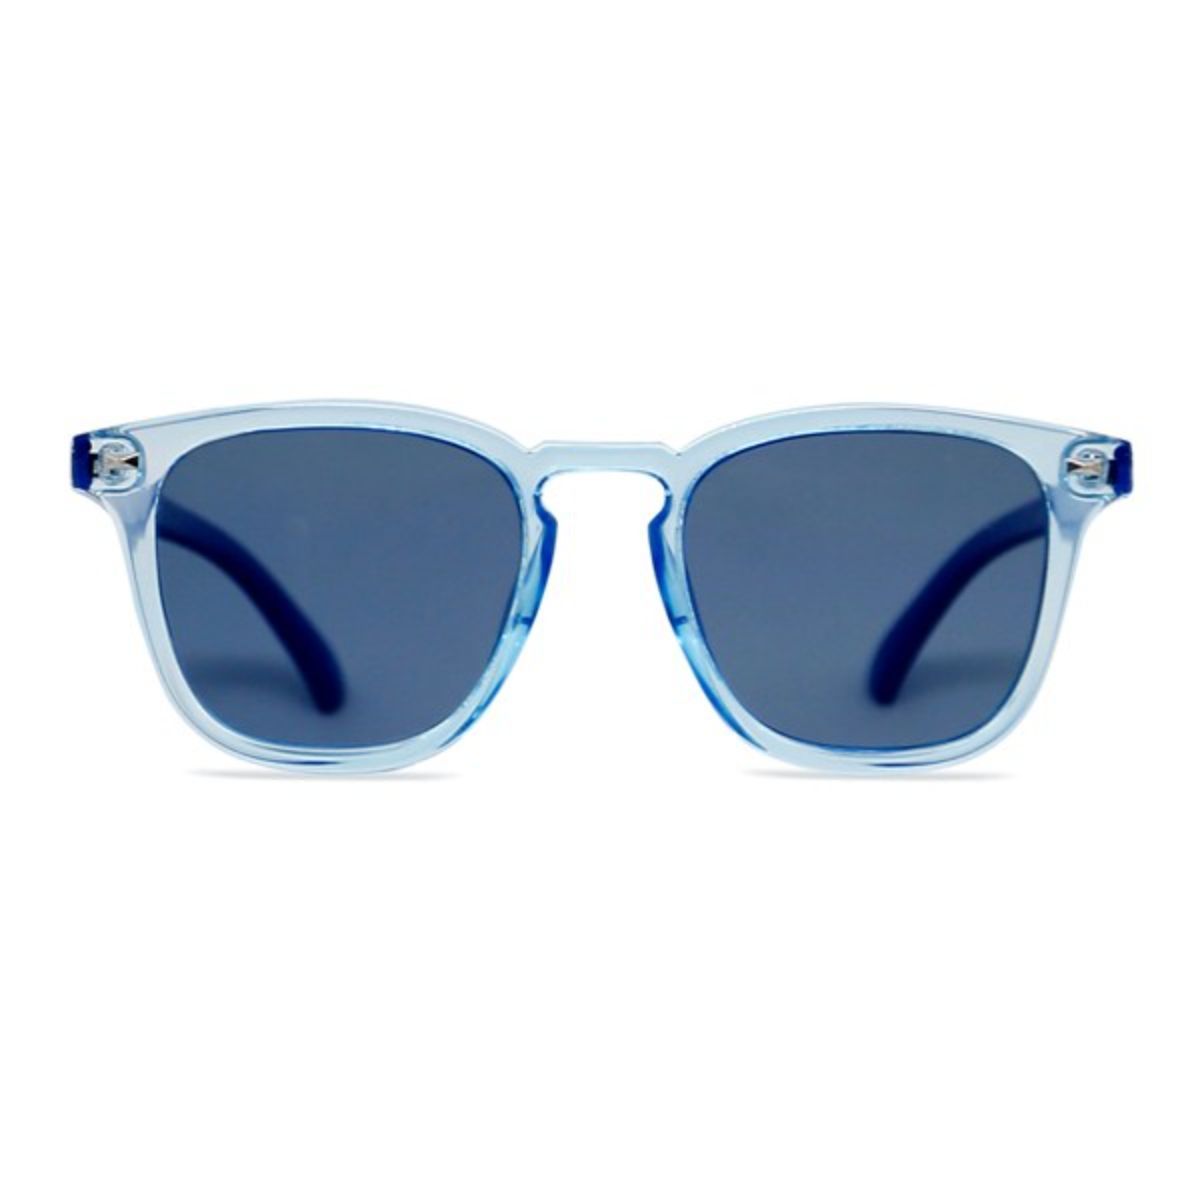 Enrico Amanzi Blue UV protected Polarized Unisex Sunglasses